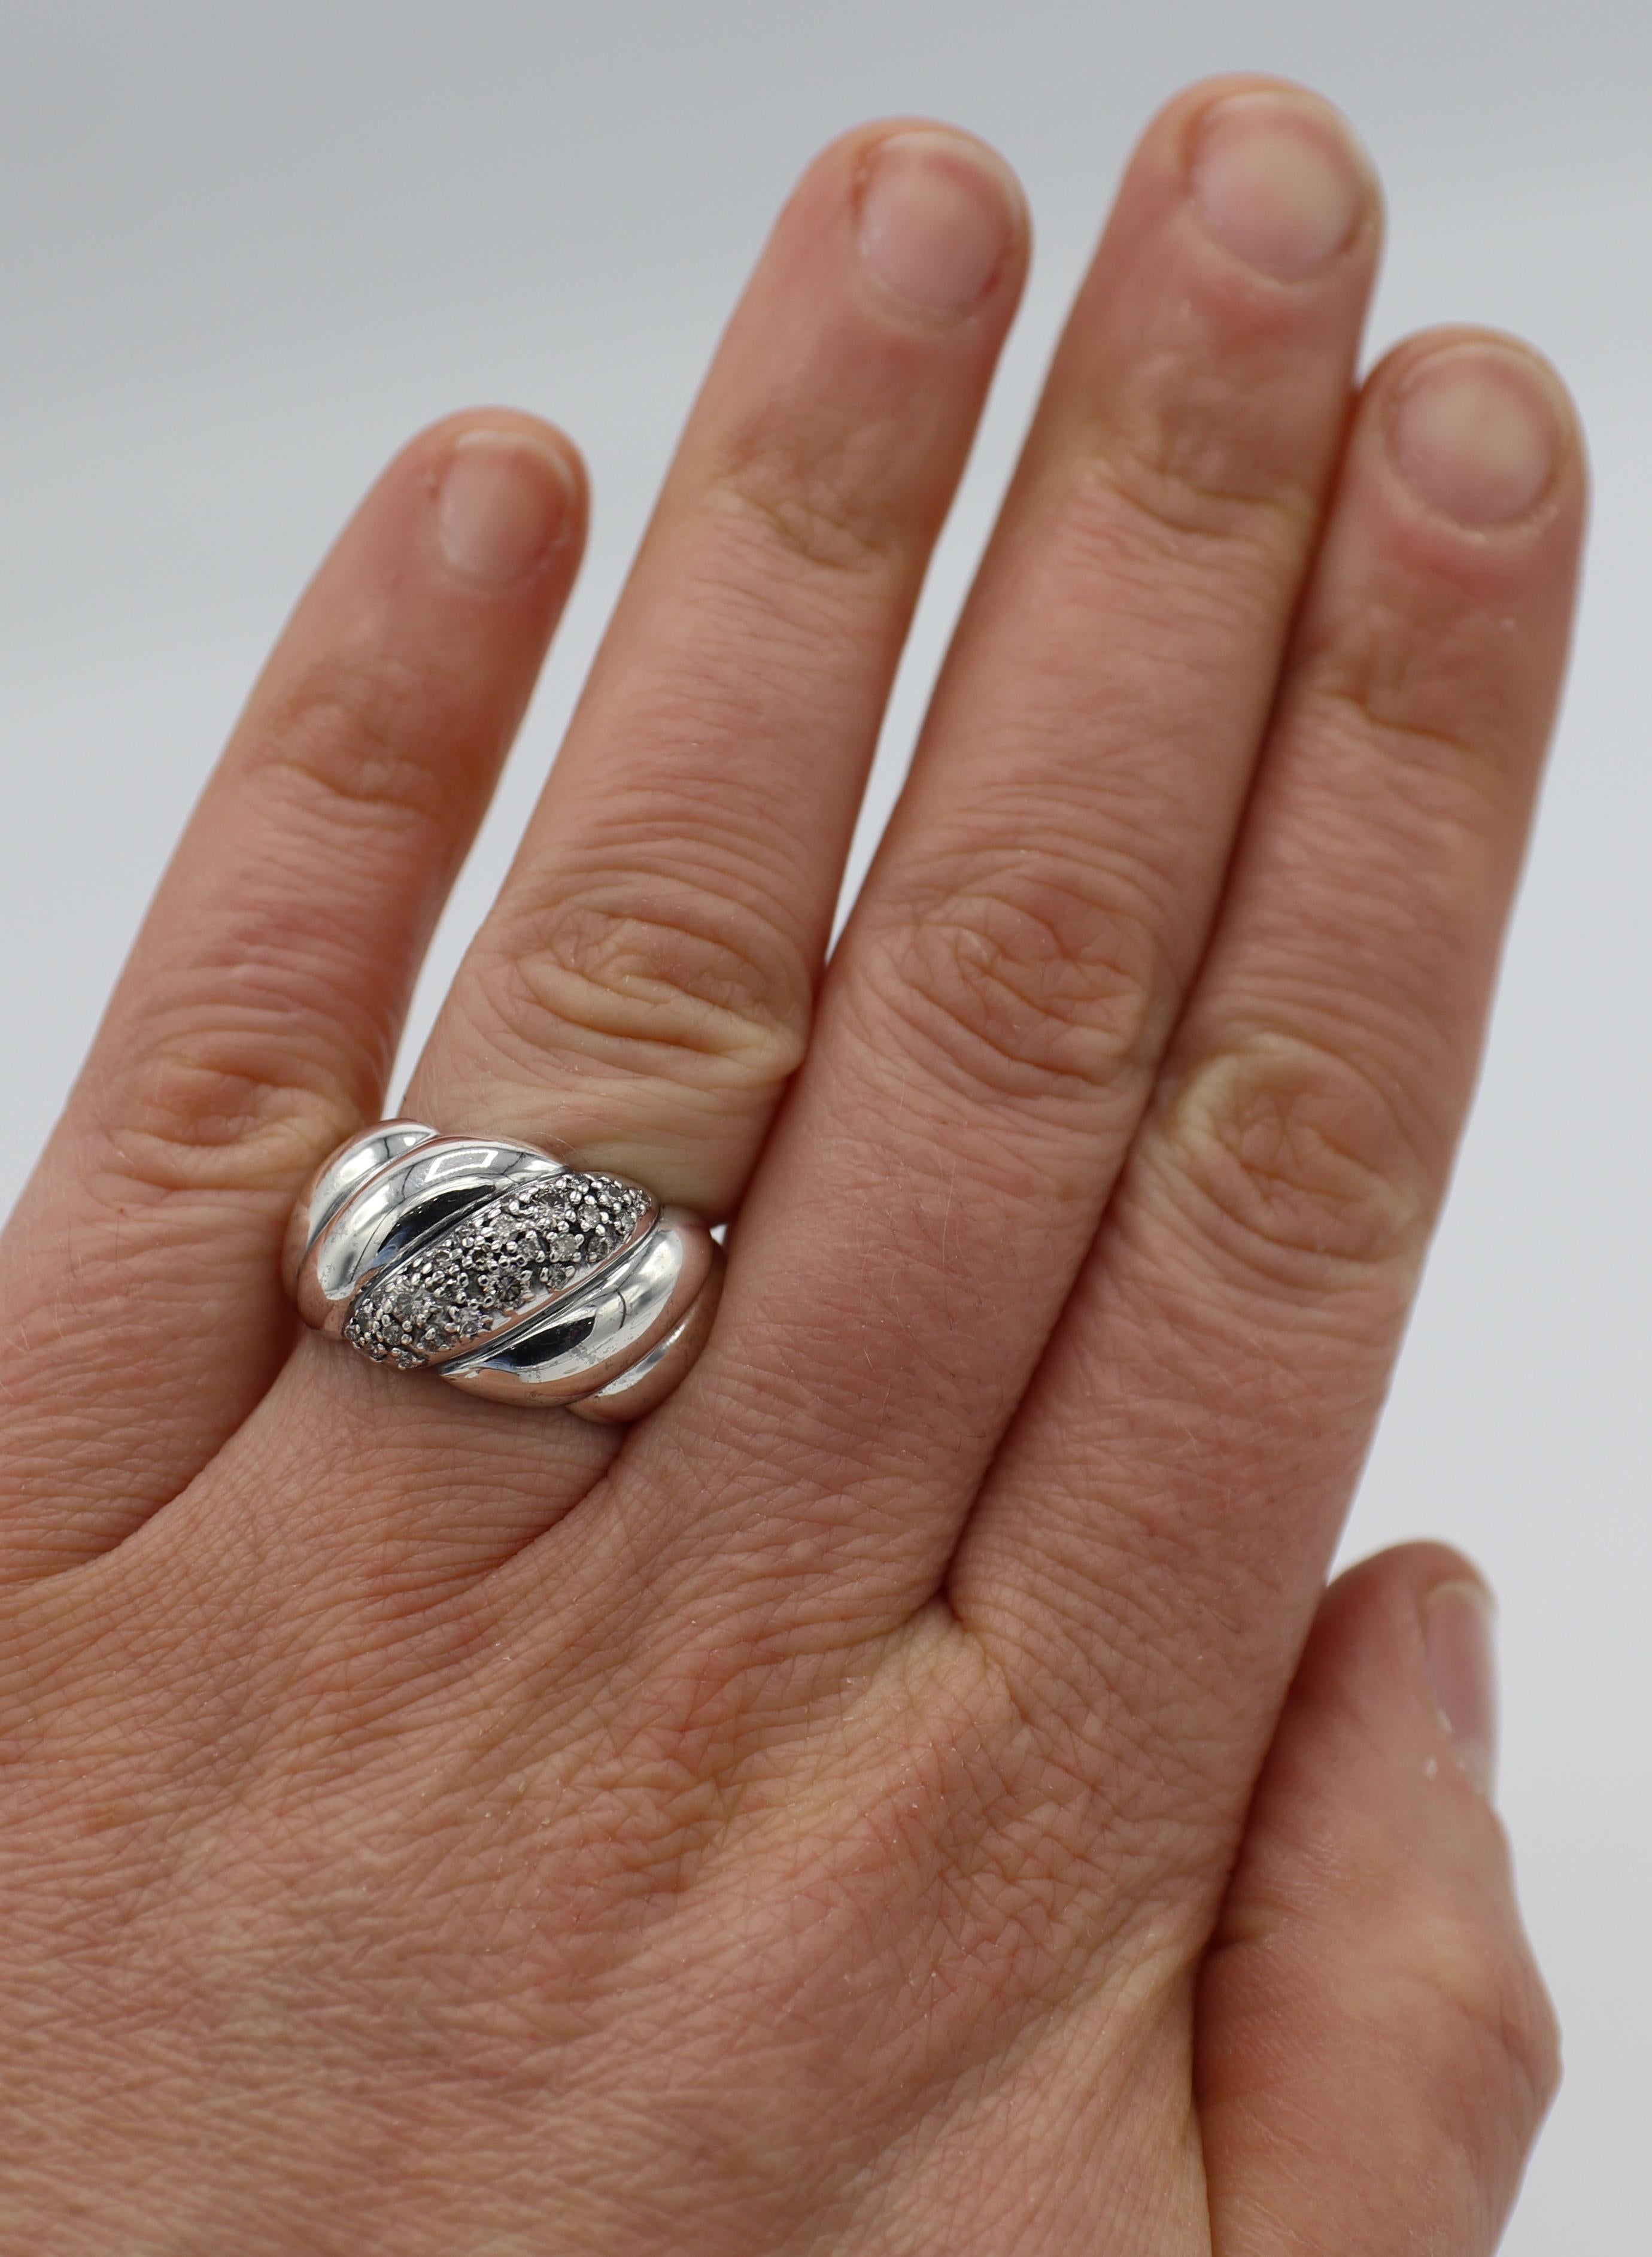 David Yurman Sterlingsilber-Diamant-Ring mit geformtem Kabel 
Metall: Sterling Silber 925
Gewicht: 13.4 Gramm
Diamanten: Ca. .30 CTW G-H VS runde Diamanten
Größe: 7 (US)
Breite: 7,5 - 12,8 mm
Unterzeichnet: D.Y. 925